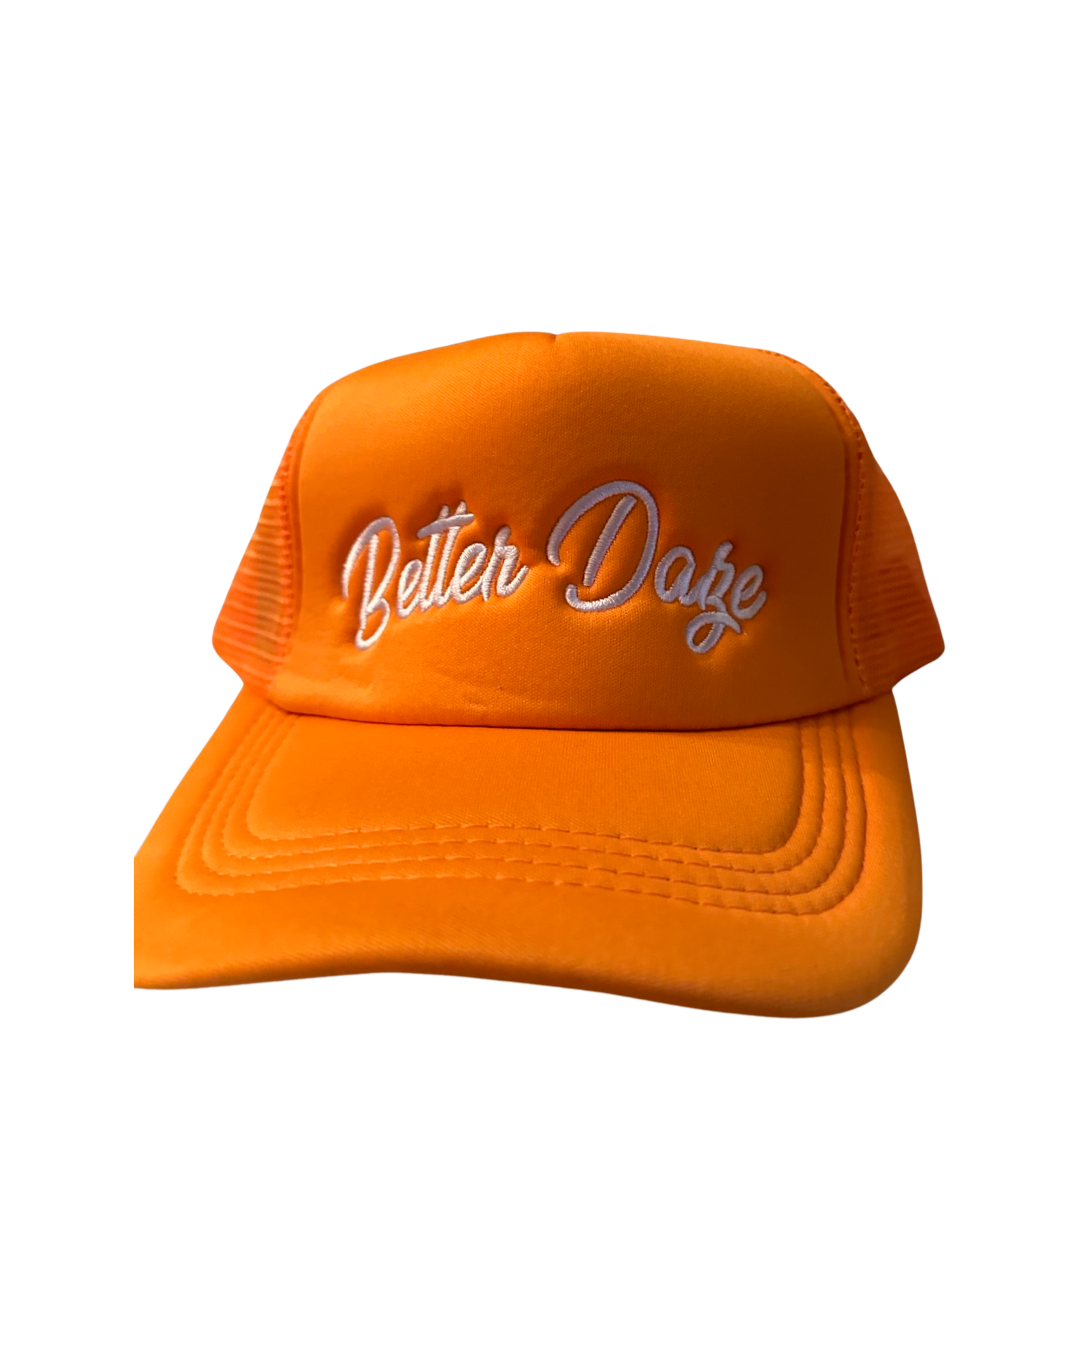 Orange Trucker hat